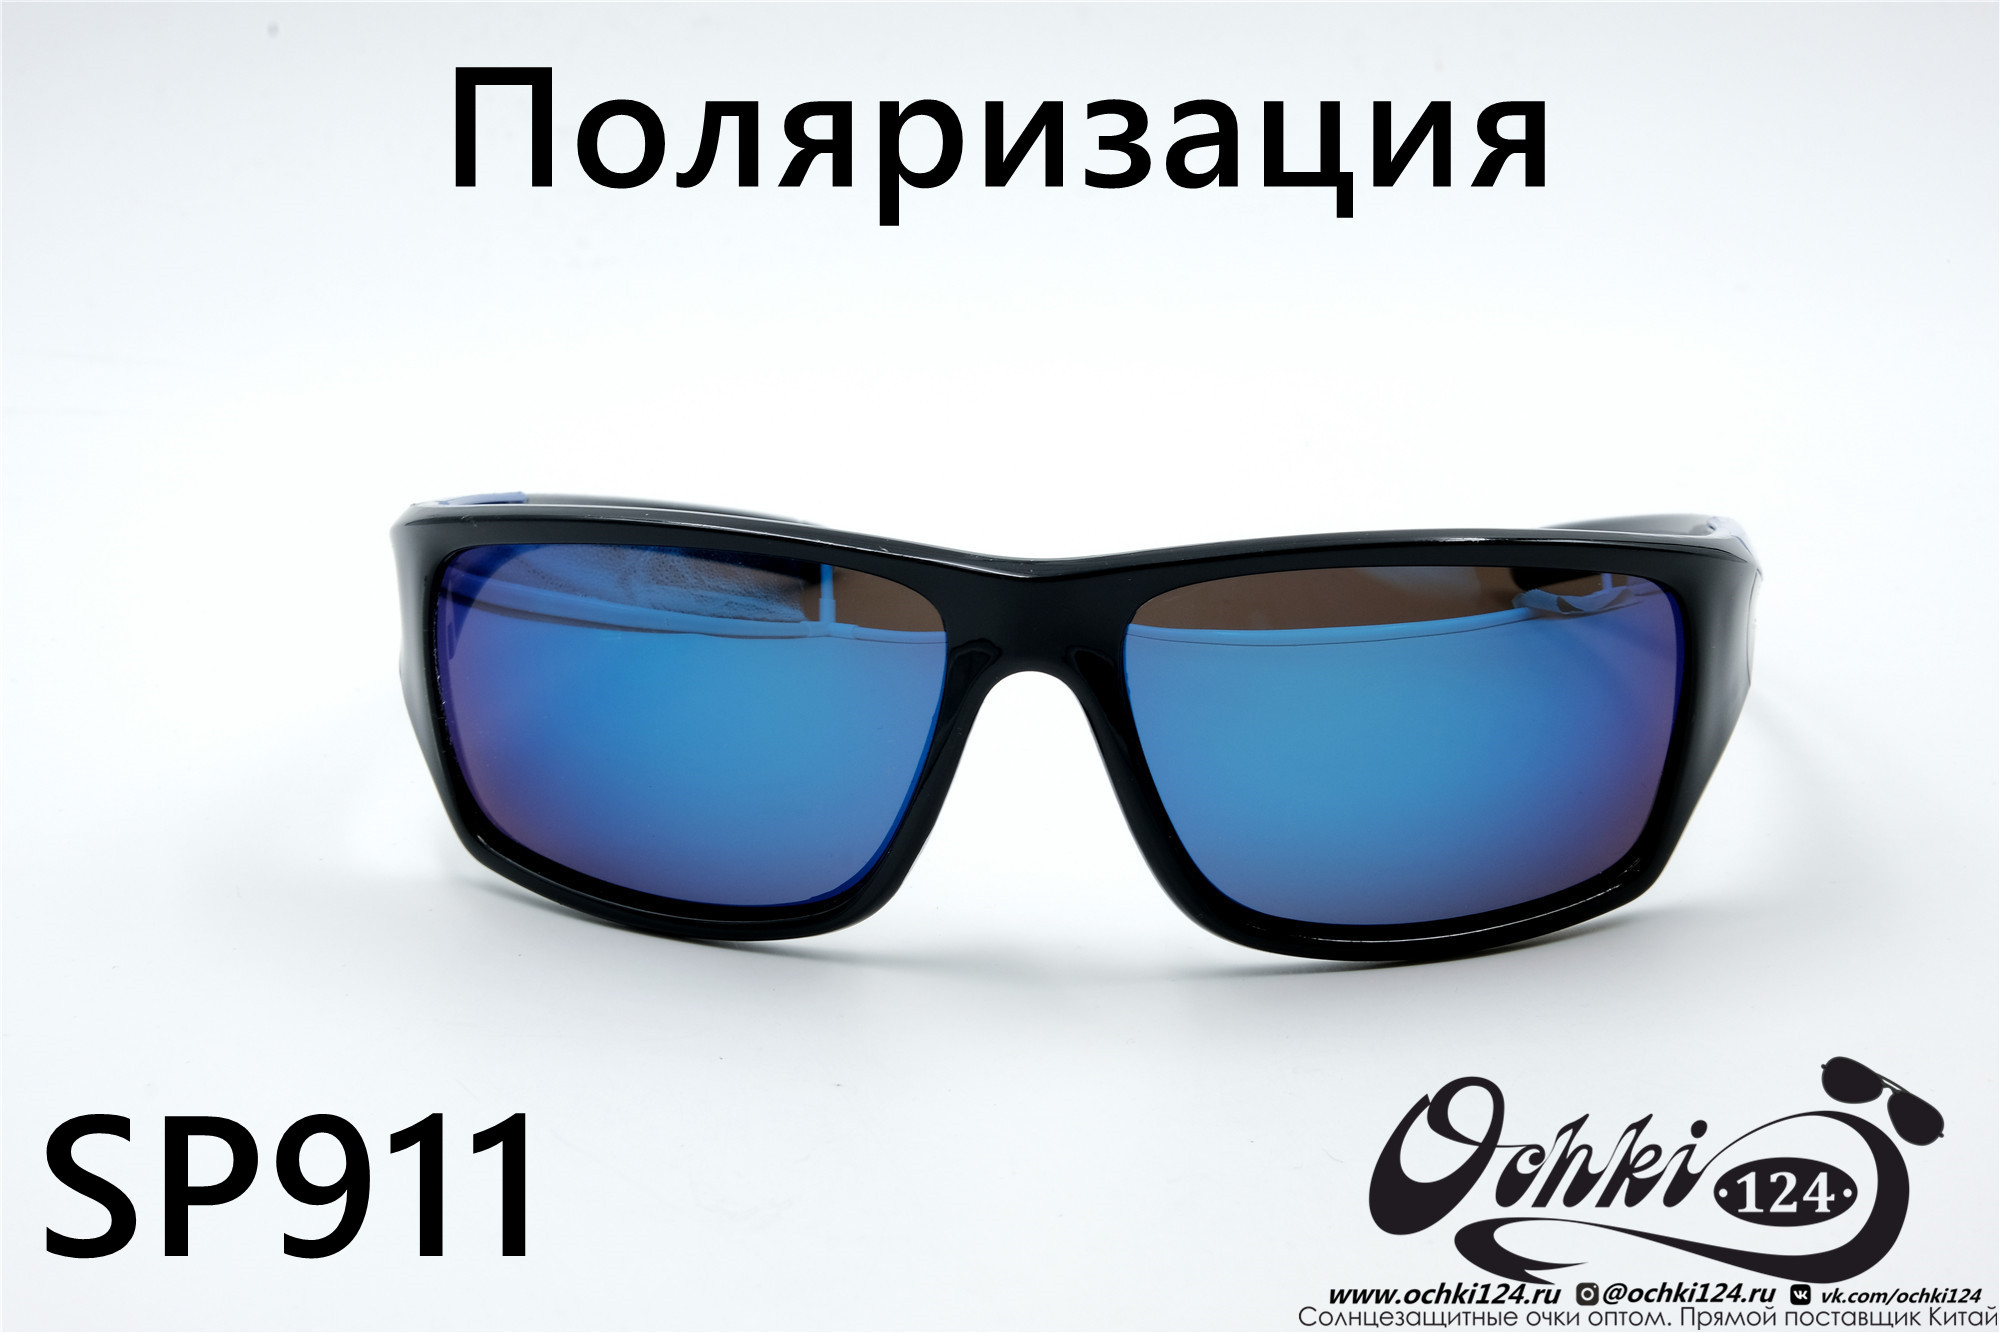  Солнцезащитные очки картинка 2022 Мужские Поляризованные Спорт Materice SP911-8 